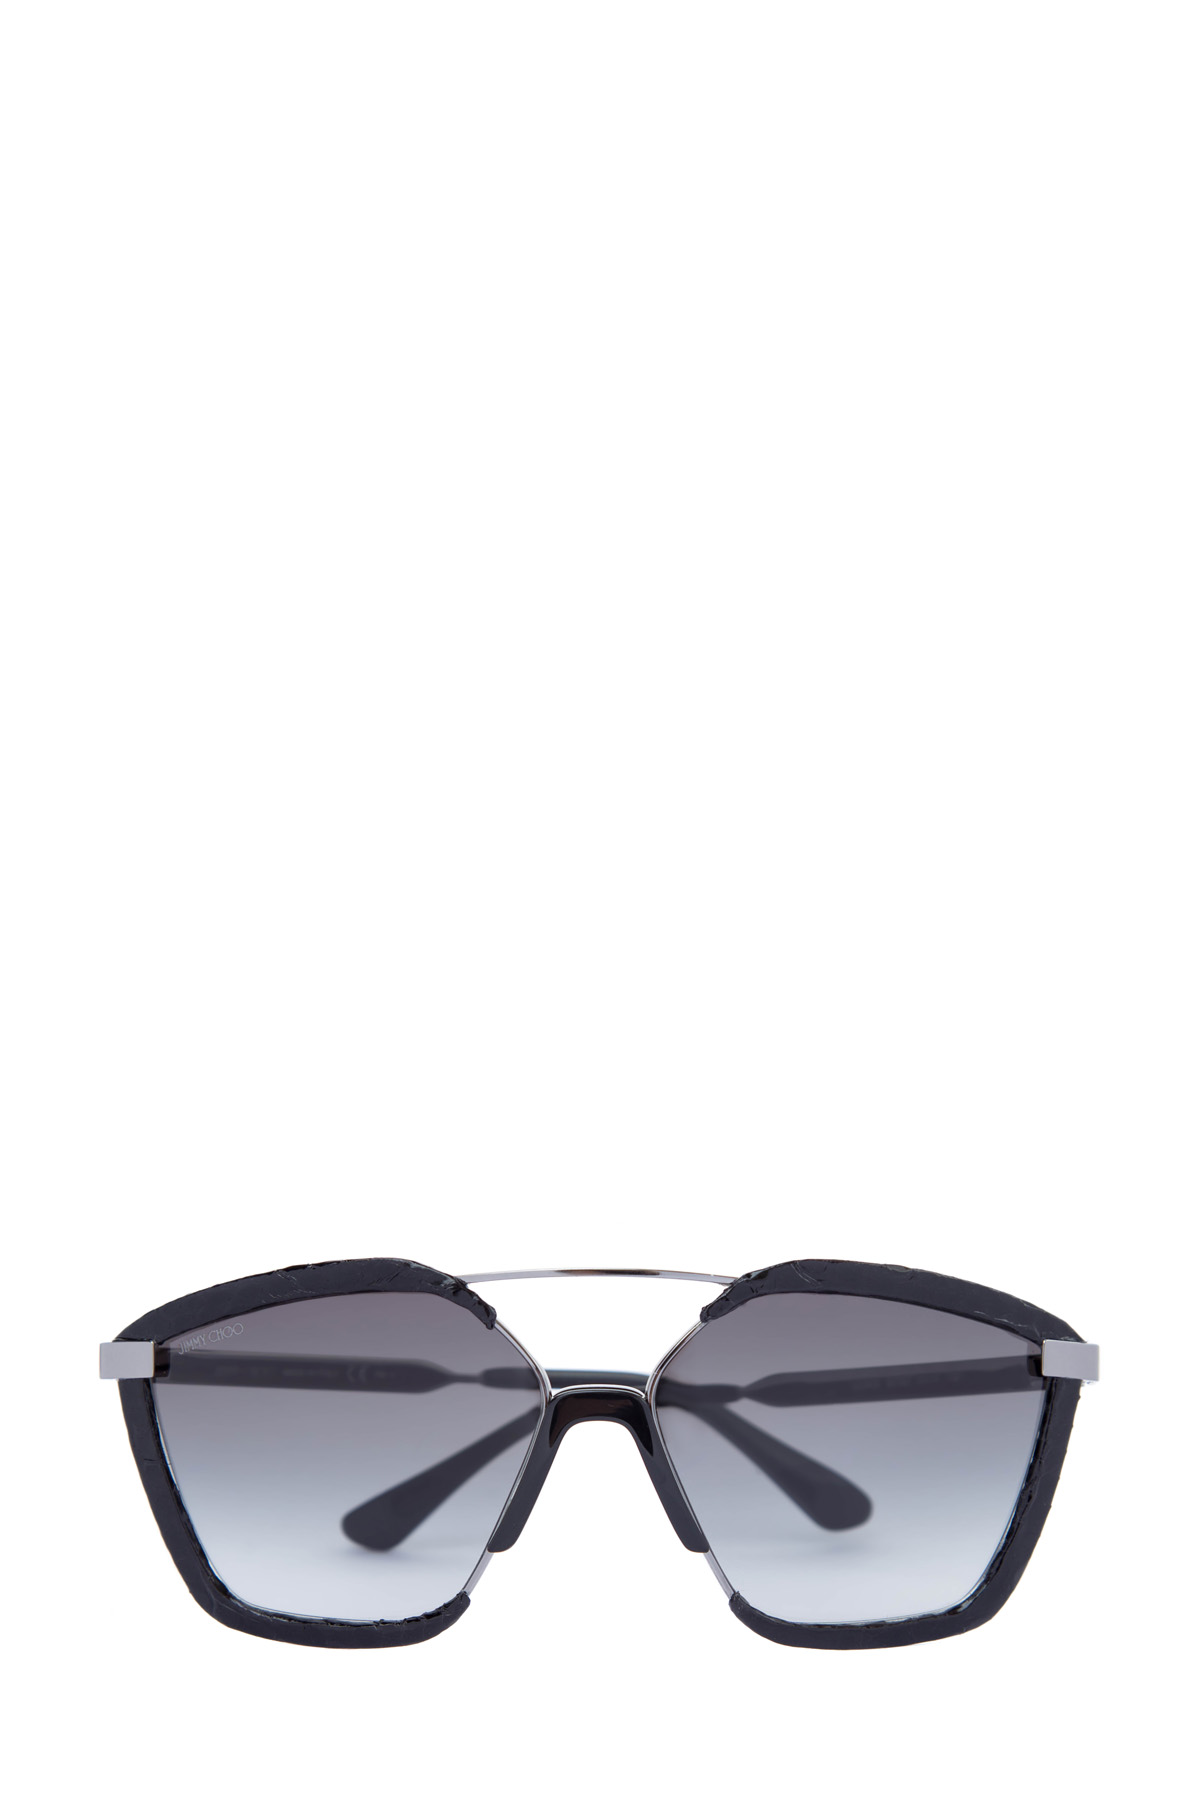 Очки Leon в металлической оправе со вставками с отделкой из кожи змеи JIMMY CHOO  (sunglasses), размер 44 - фото 1